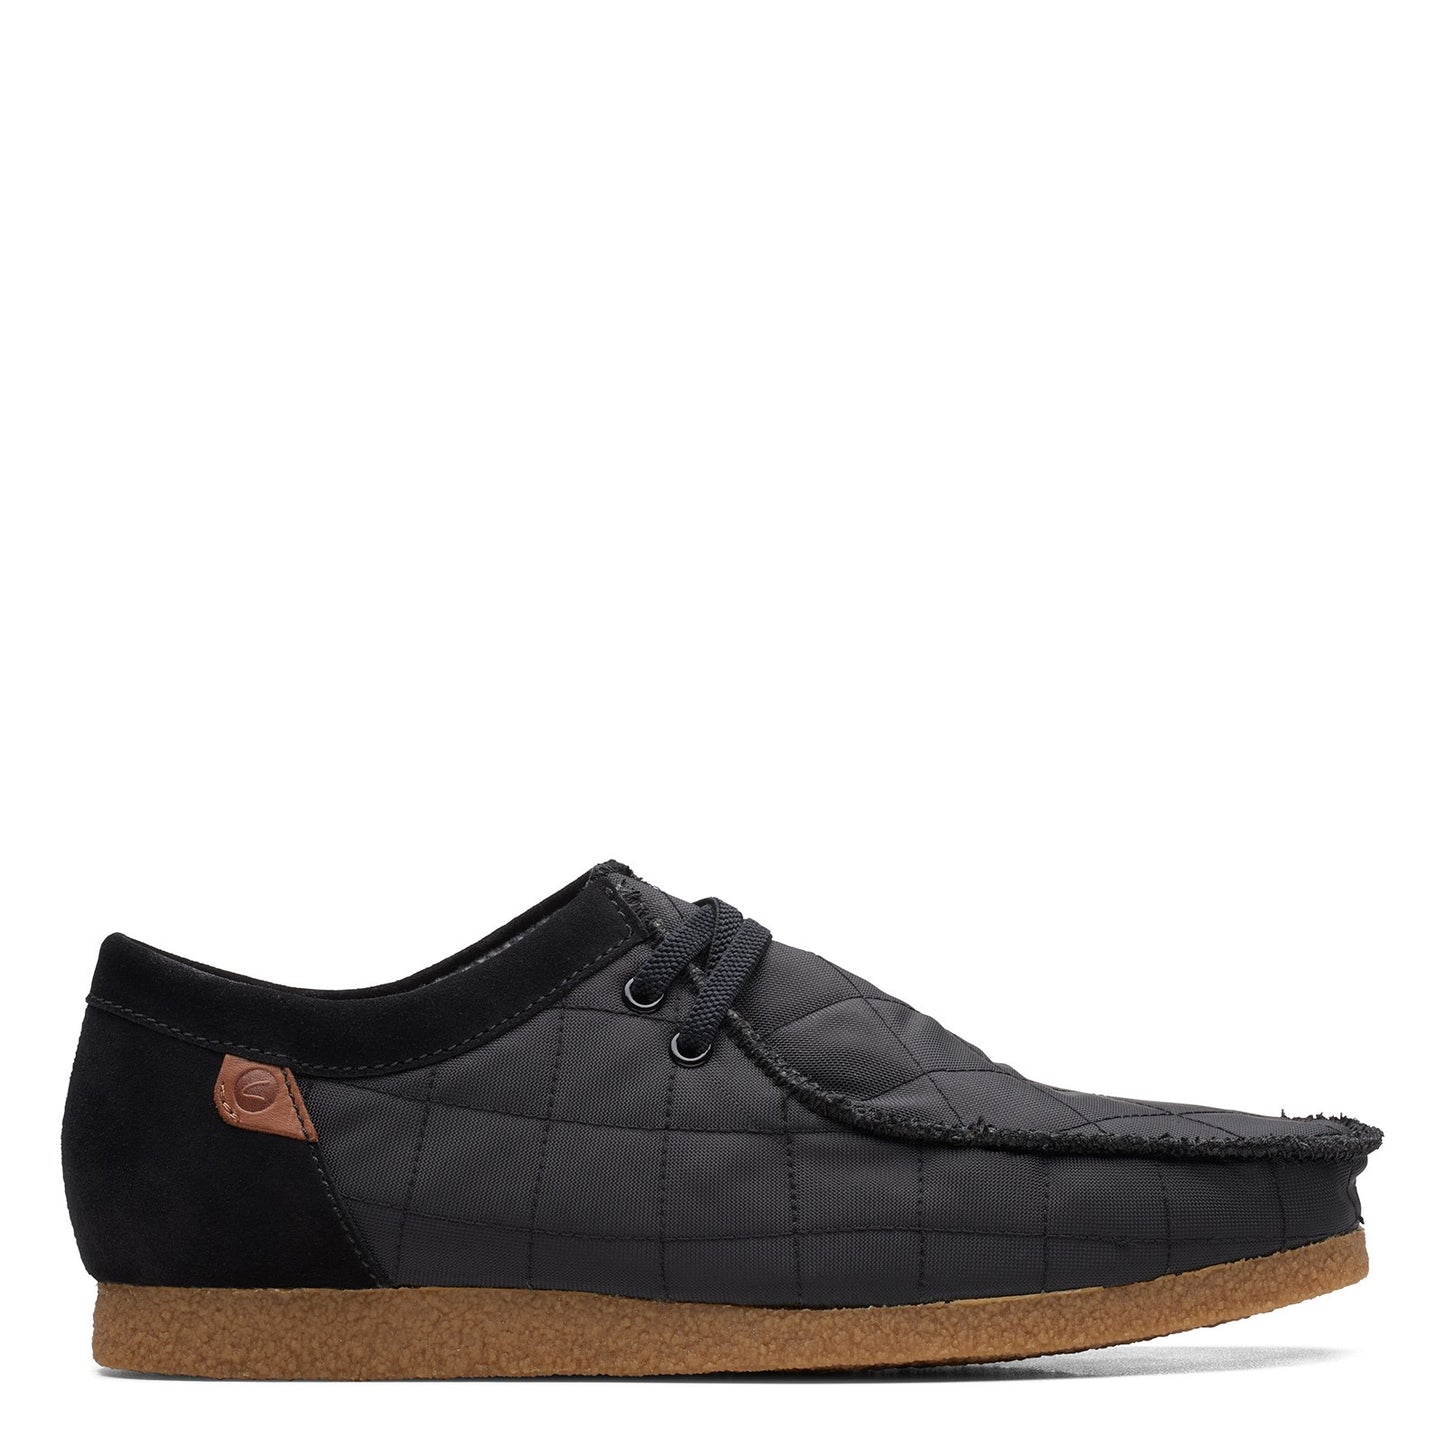 Peltz Shoes  Men's Clarks Shacre II Step Oxford BLACK FABRIC 26162714